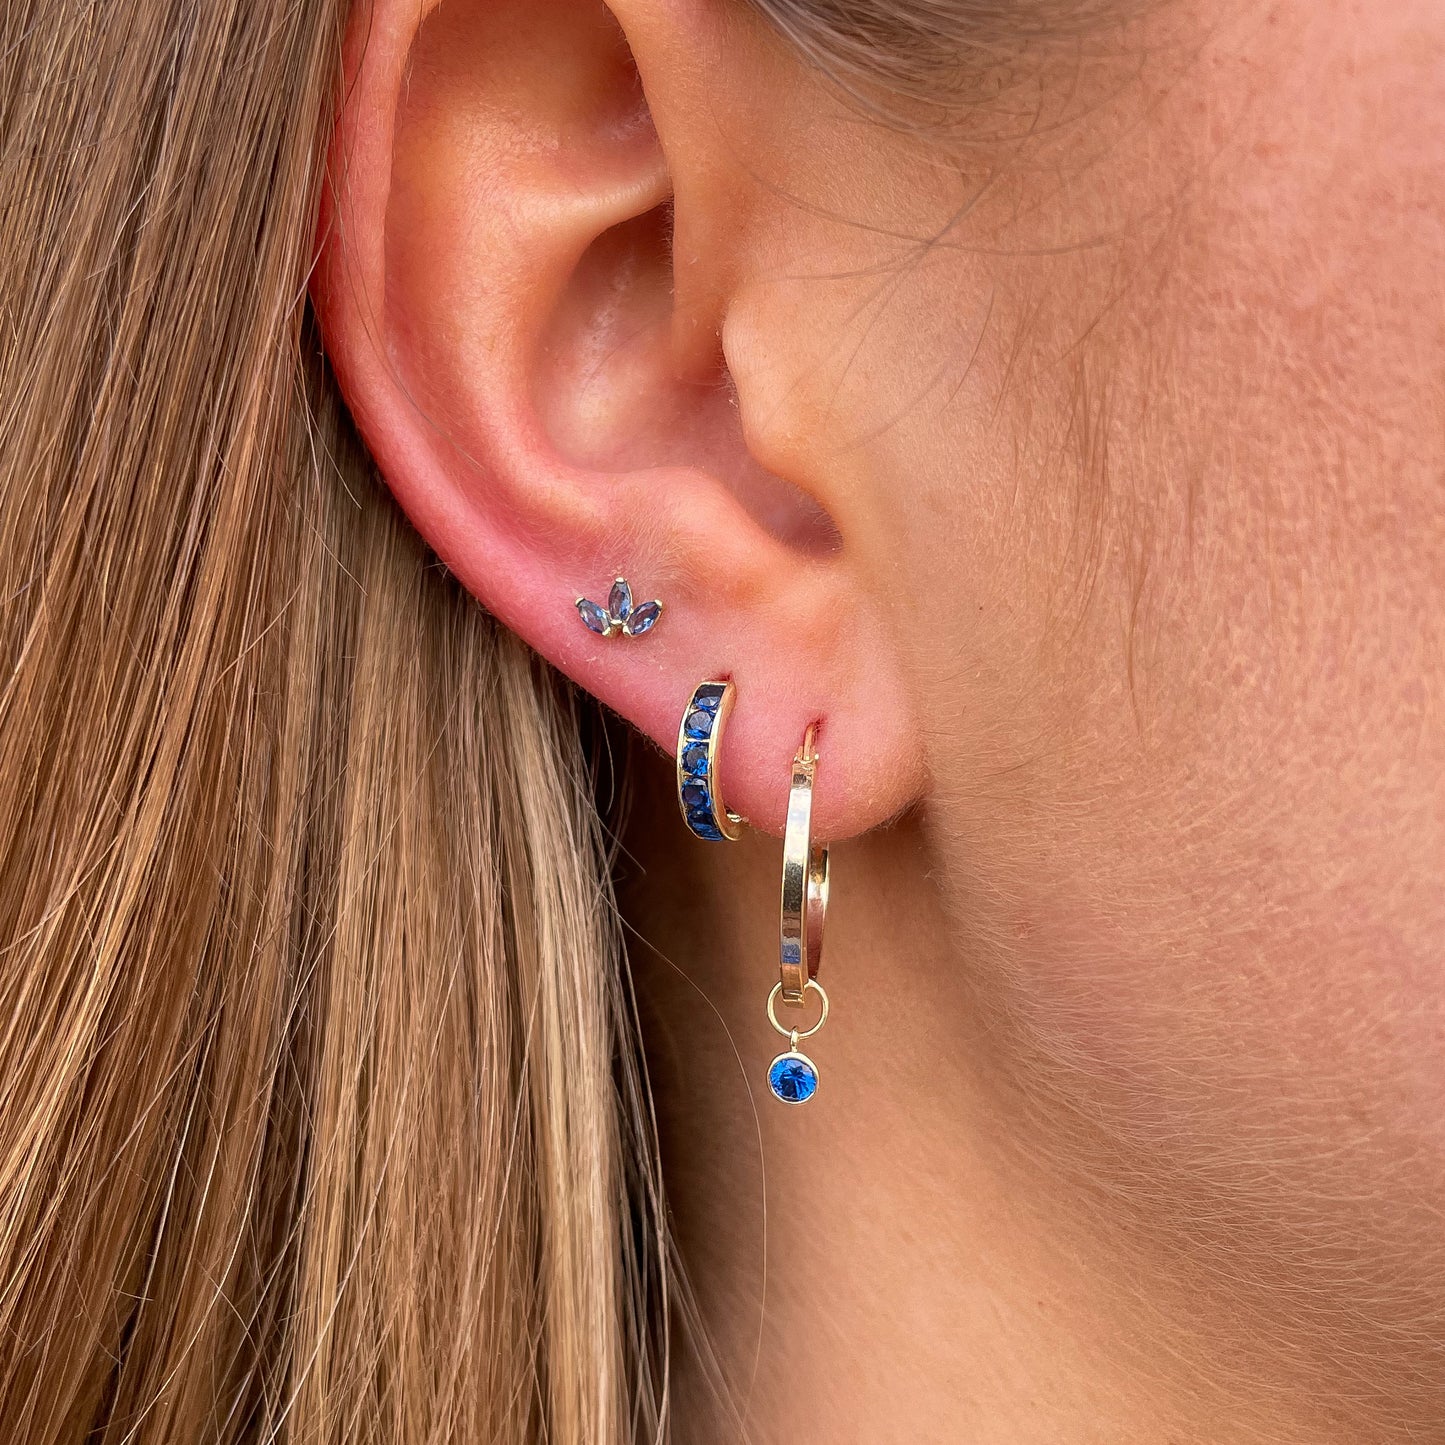 9ct Gold 11mm Huggie Hoop Earrings | Sapphire Blue CZ - John Ross Jewellers